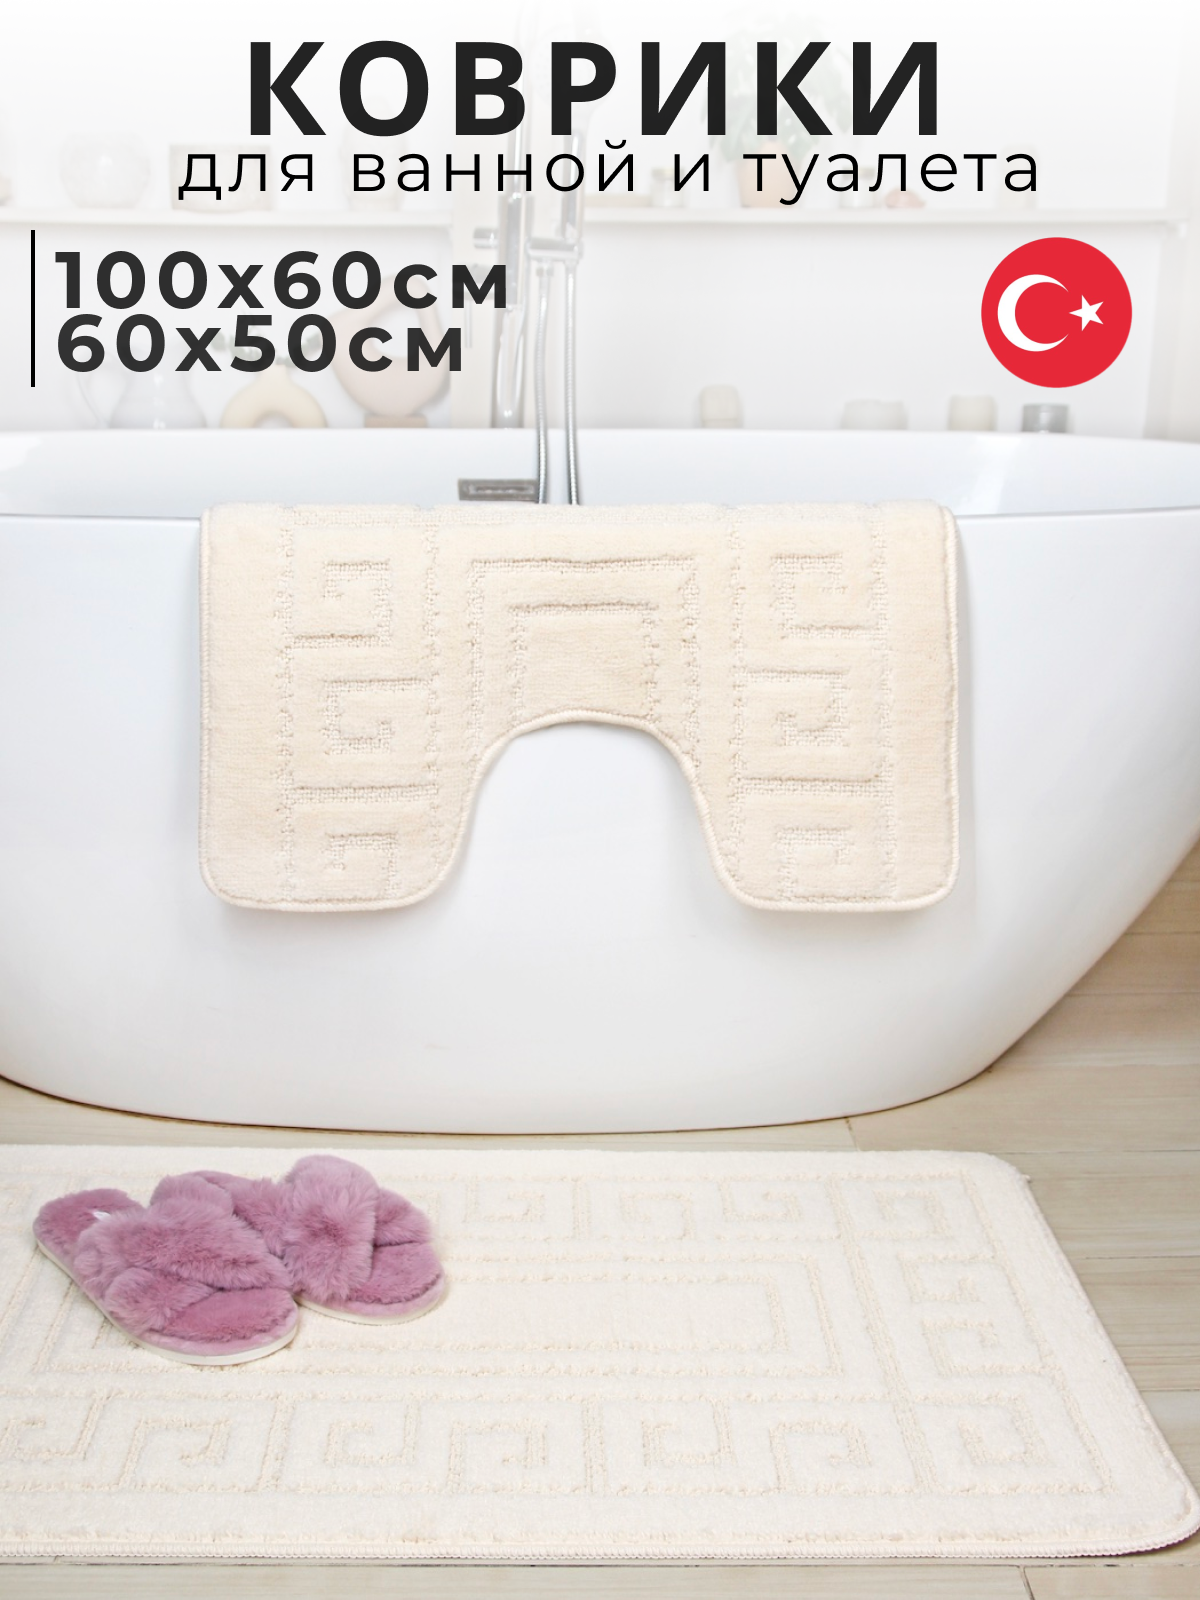 Противоскользящие коврики для ванной и туалета Vonaldi 100х60 см и 60х50 см, кремовый